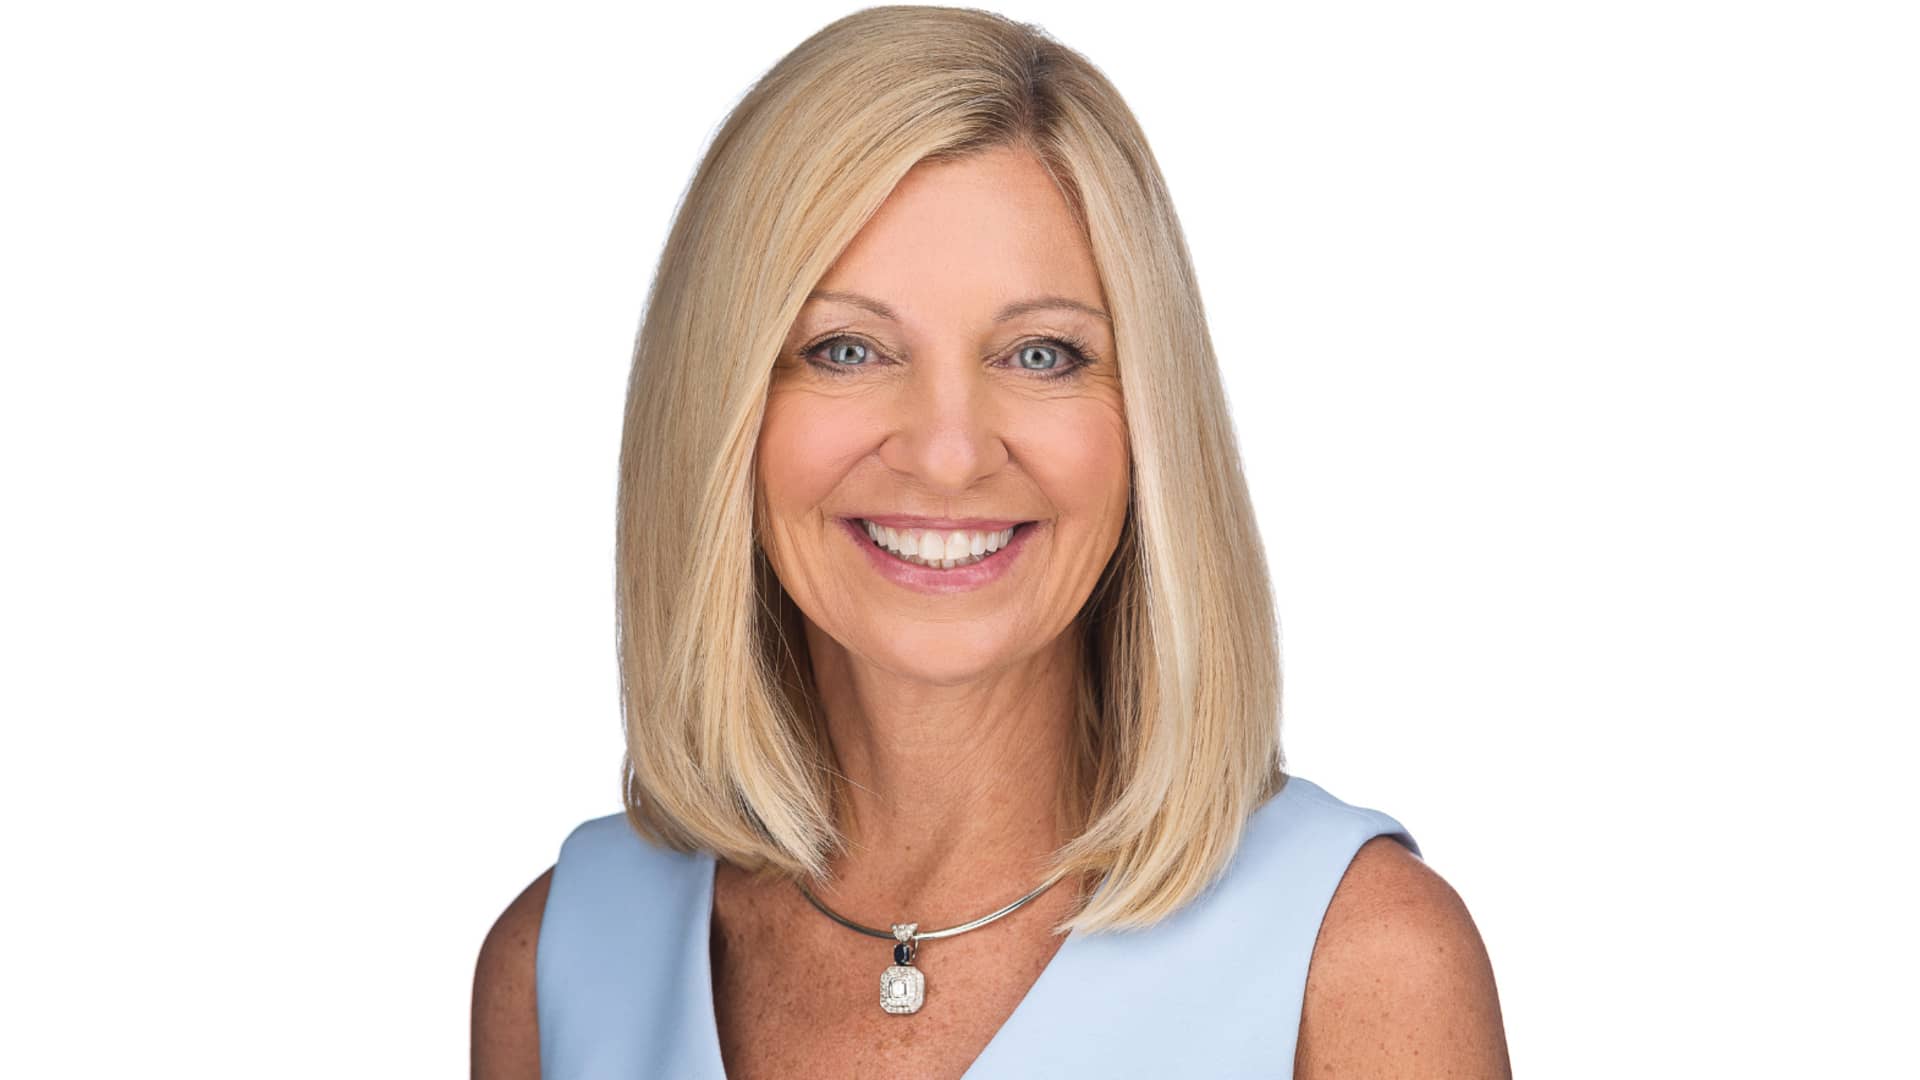 Karen S. Lynch, CEO of CVS